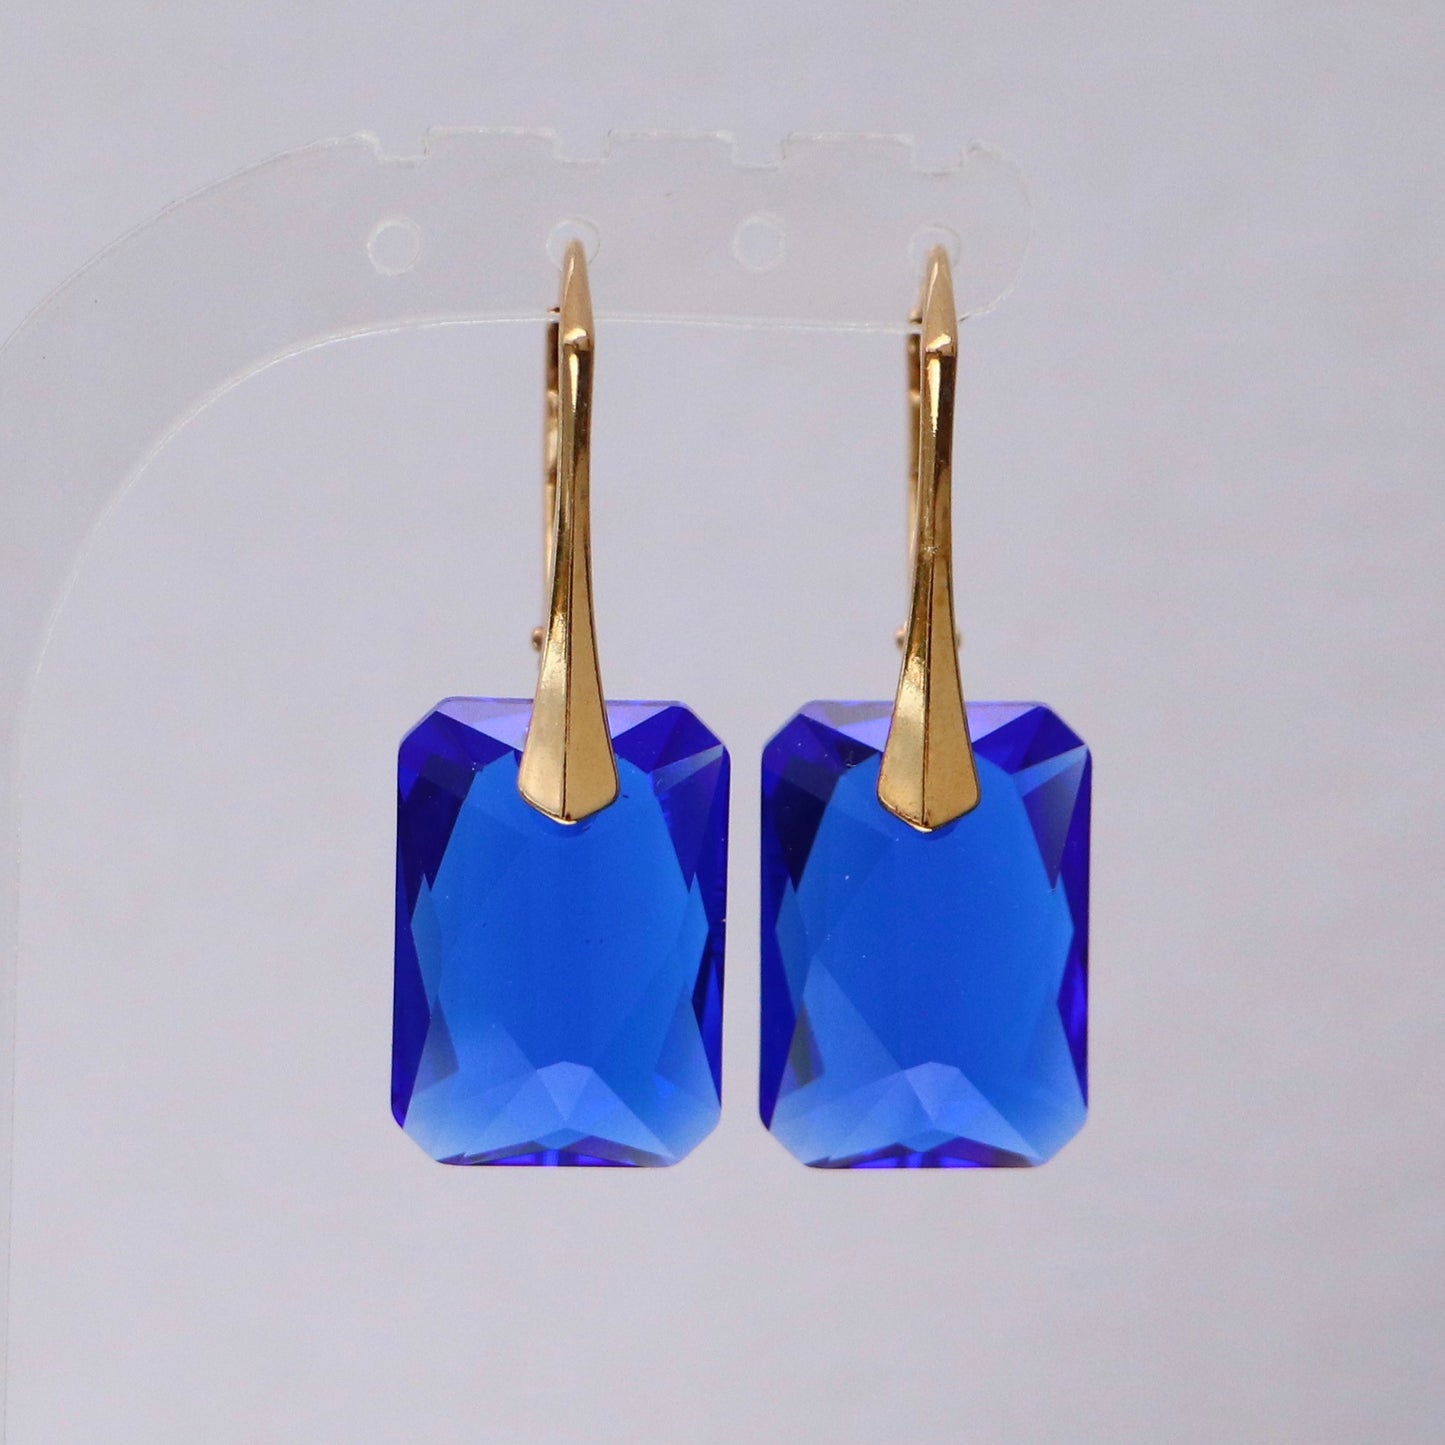 Boucles d'oreilles avec cristaux Swarovski, bleu, argent doré, NOEMIE